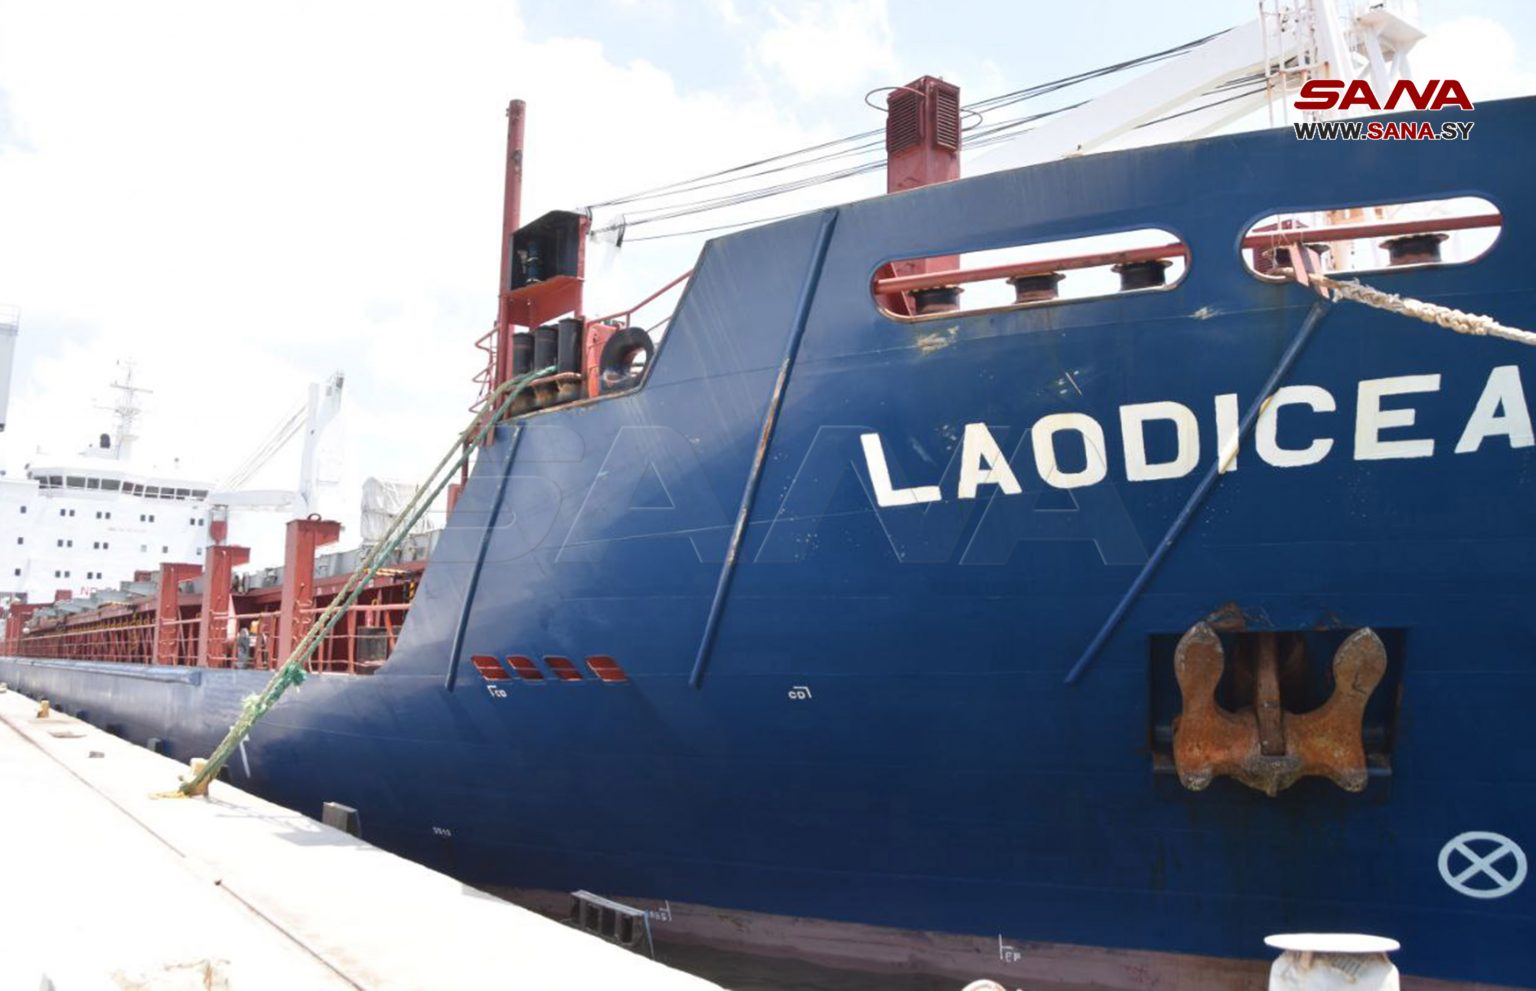 کشتی “لائودیسه” پس از اتهامات واهی در یکی از بندرهای سوریه پهلو گرفت 7-8-2022